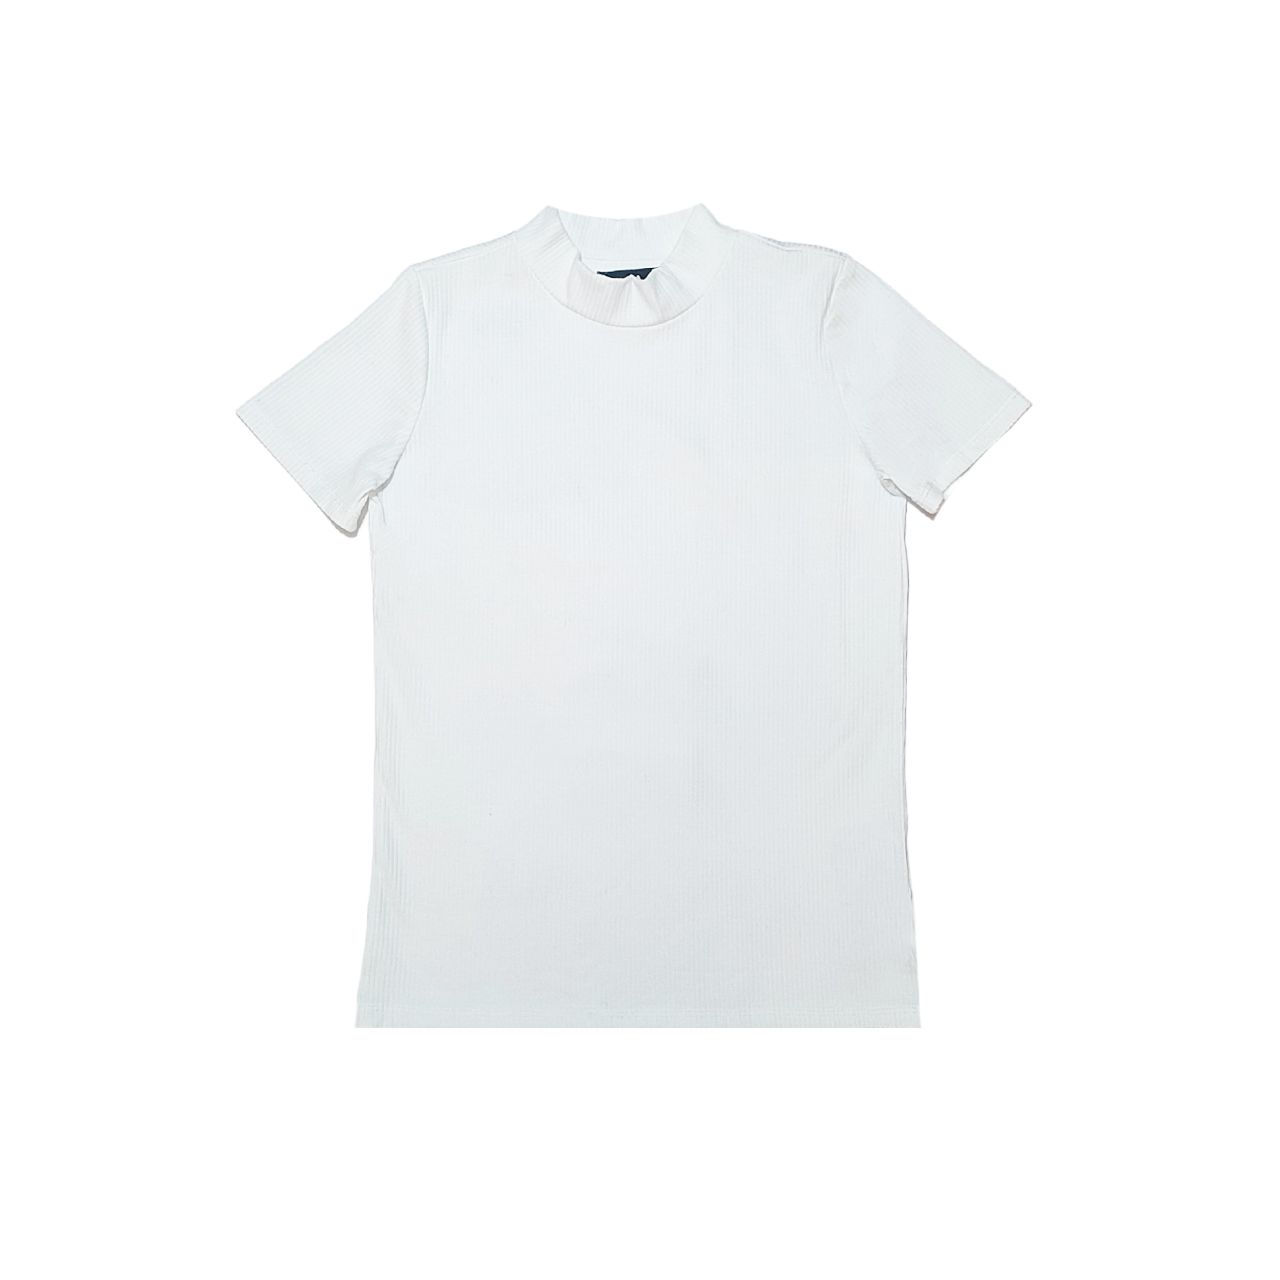 تی شرت آستین کوتاه دخترانه سی اند ای کد 5215 -  - 1